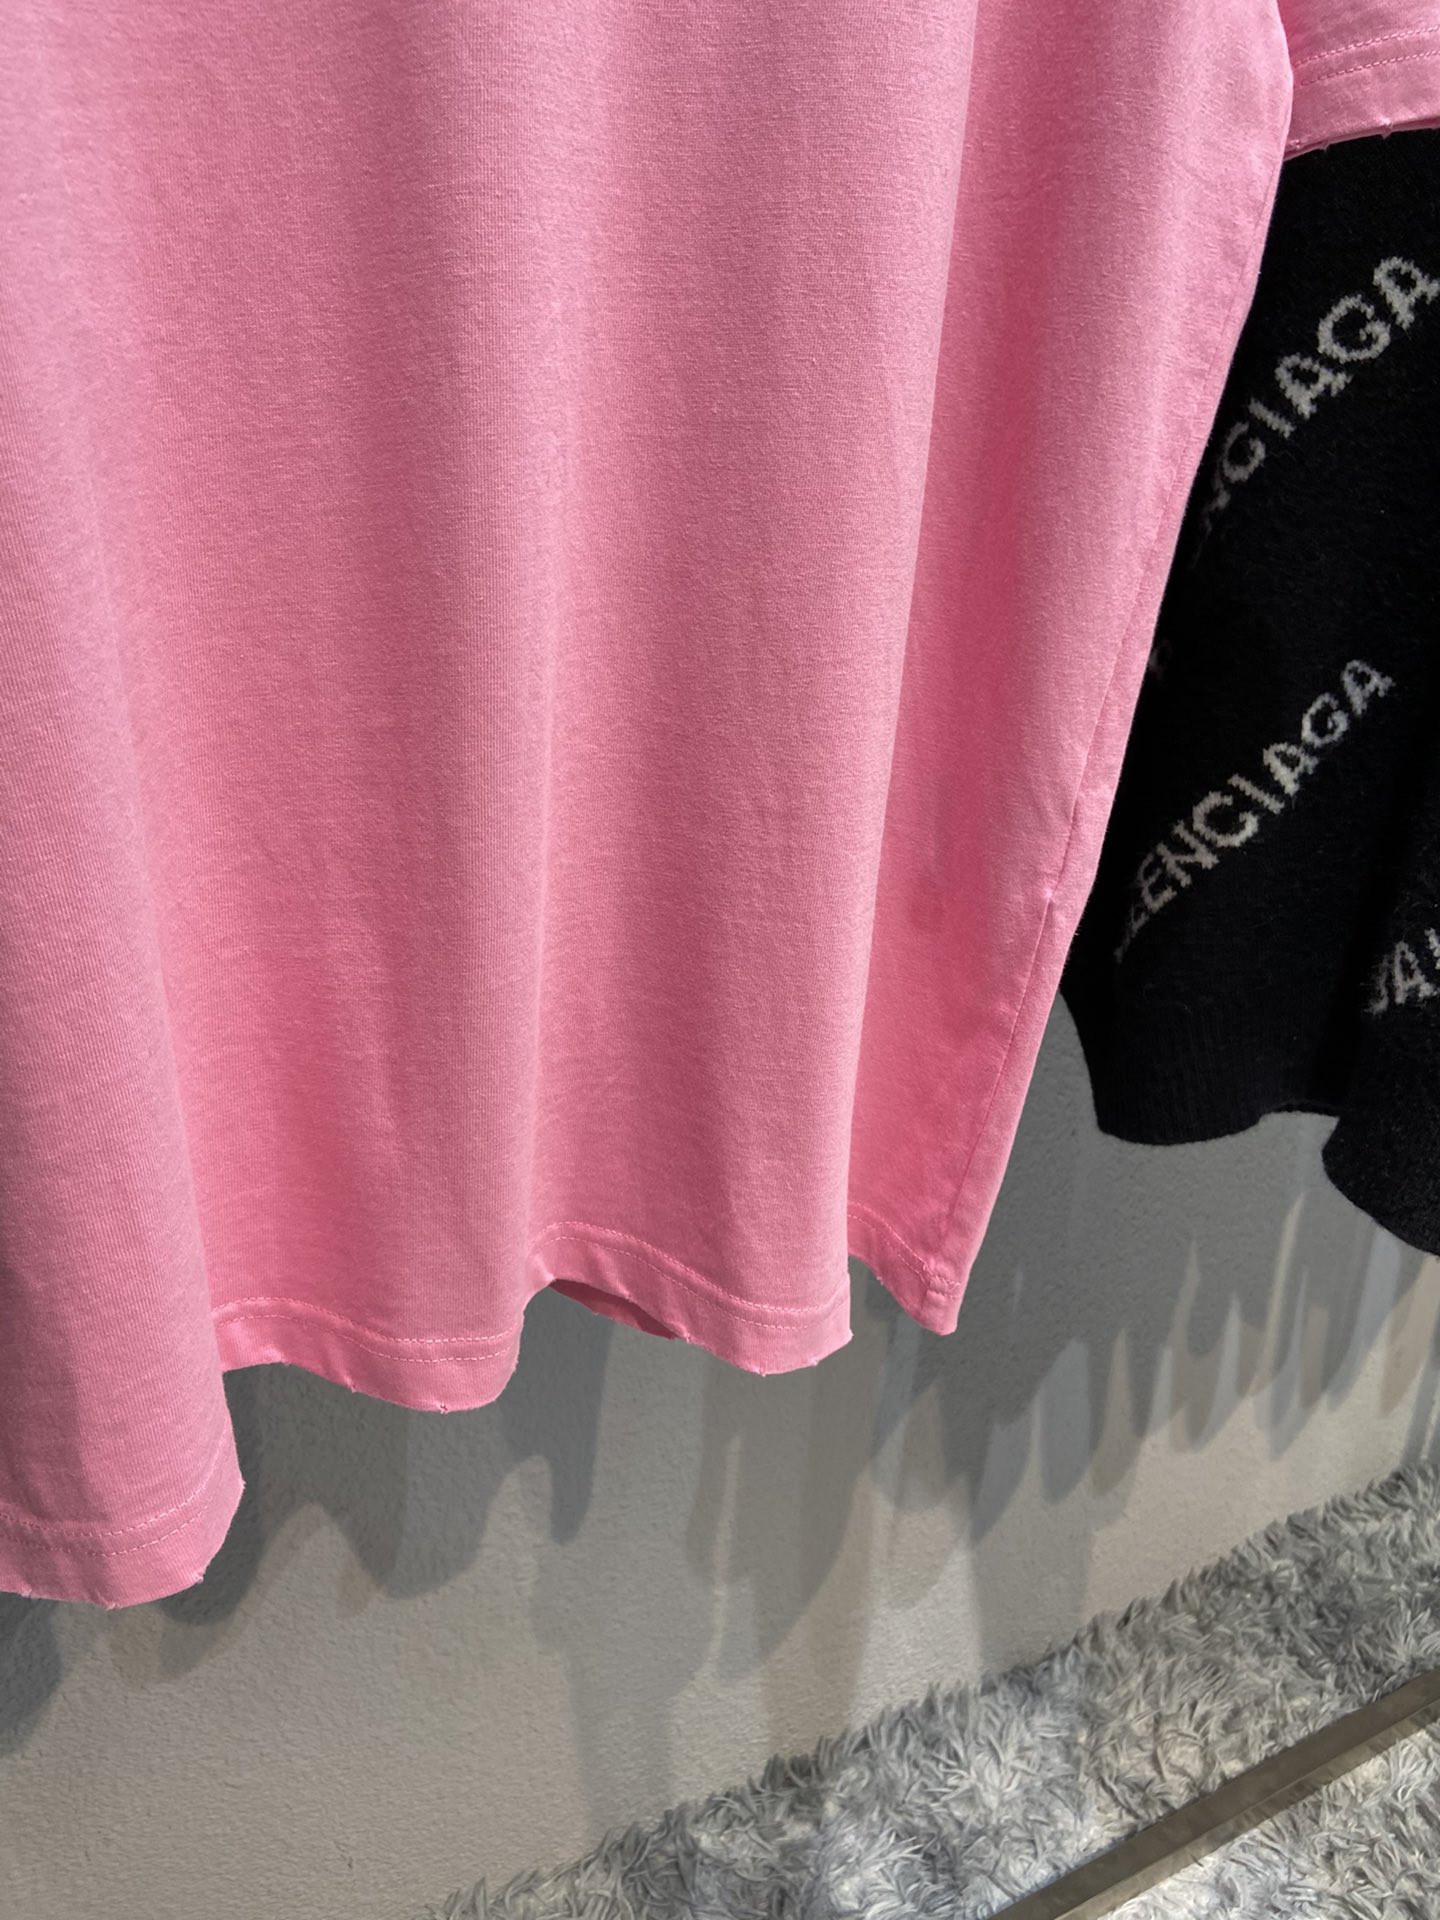 Balenciaga T-Shirt Printed in Pink